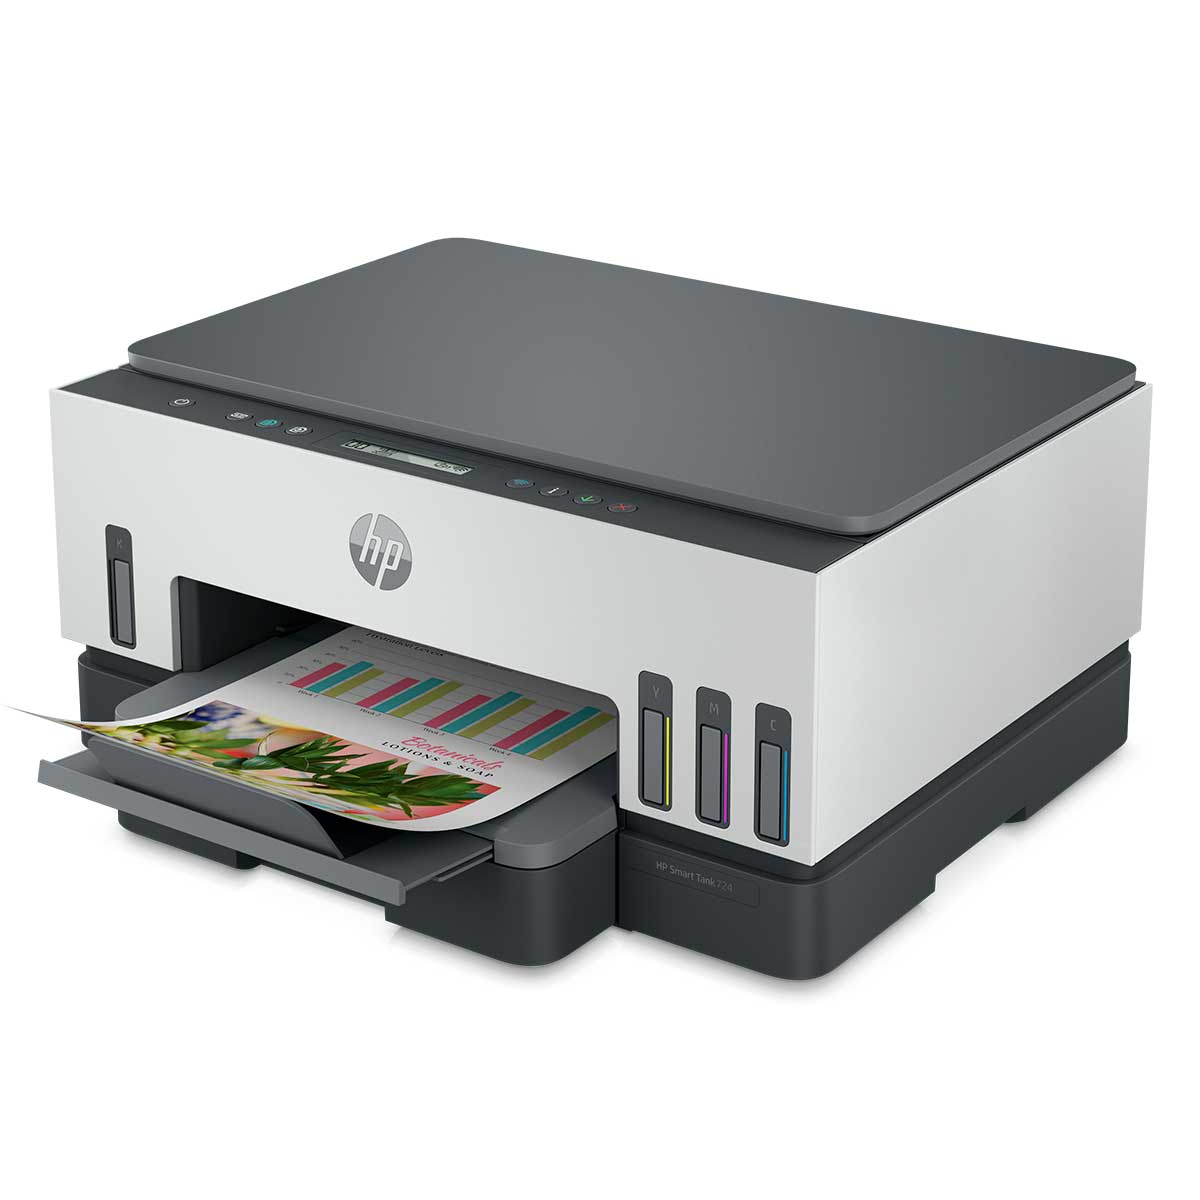 impressora-multifuncional-hp-smart-tank-724-tanque-de-tinta-colorida-scanner-duplex-wi-fi-usb-bluetooth-bivolt---2g9q2a-3.jpg